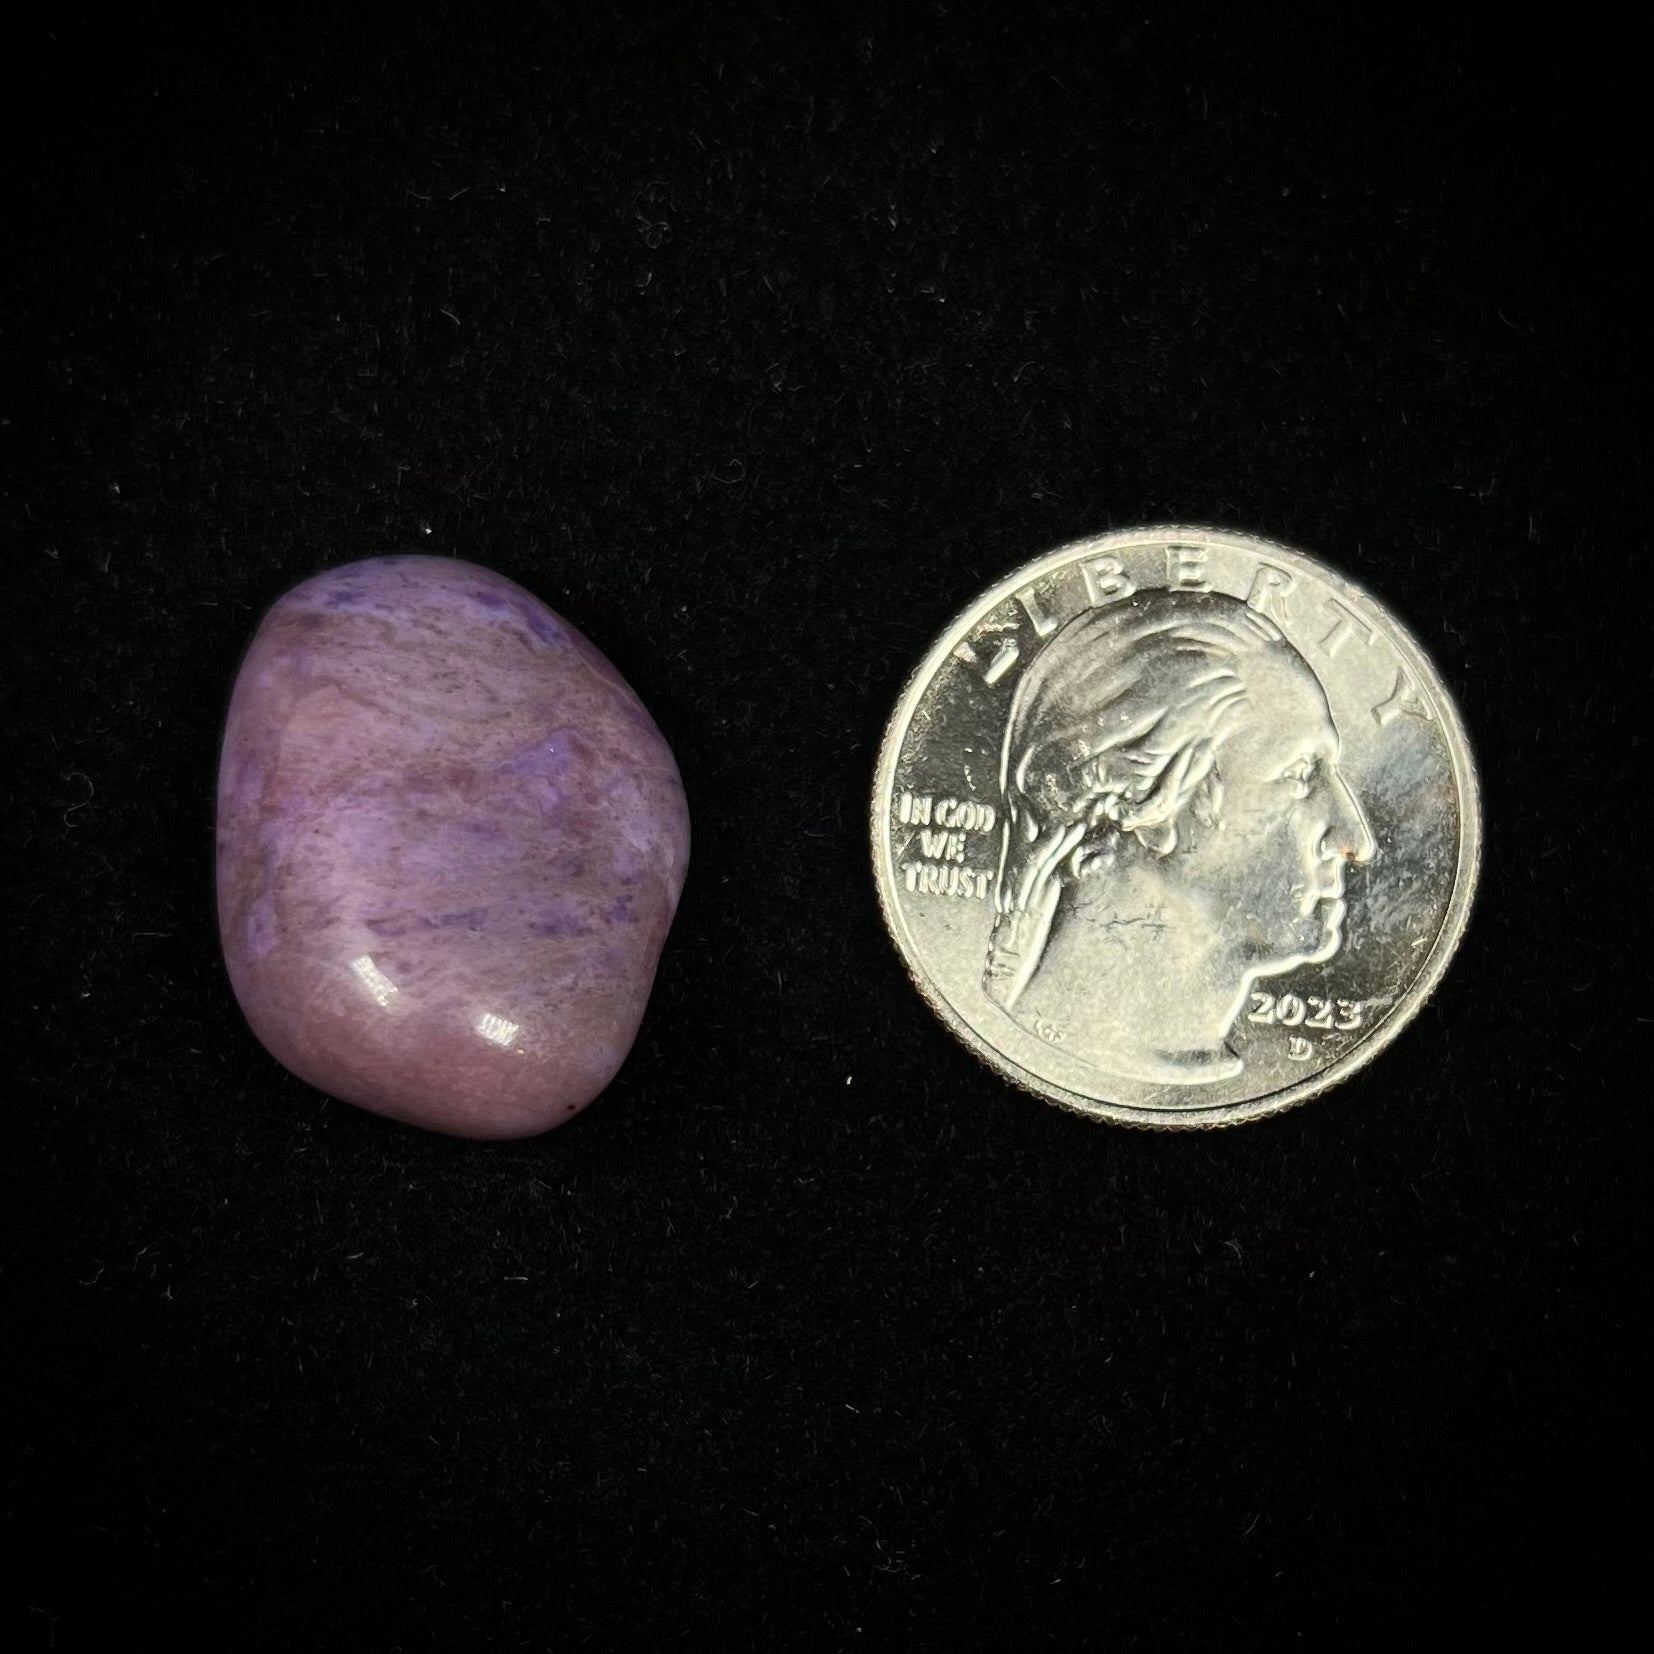 A tumbled, AAA grade, turkiyenite purple jade stone from Bursa, Turkey.